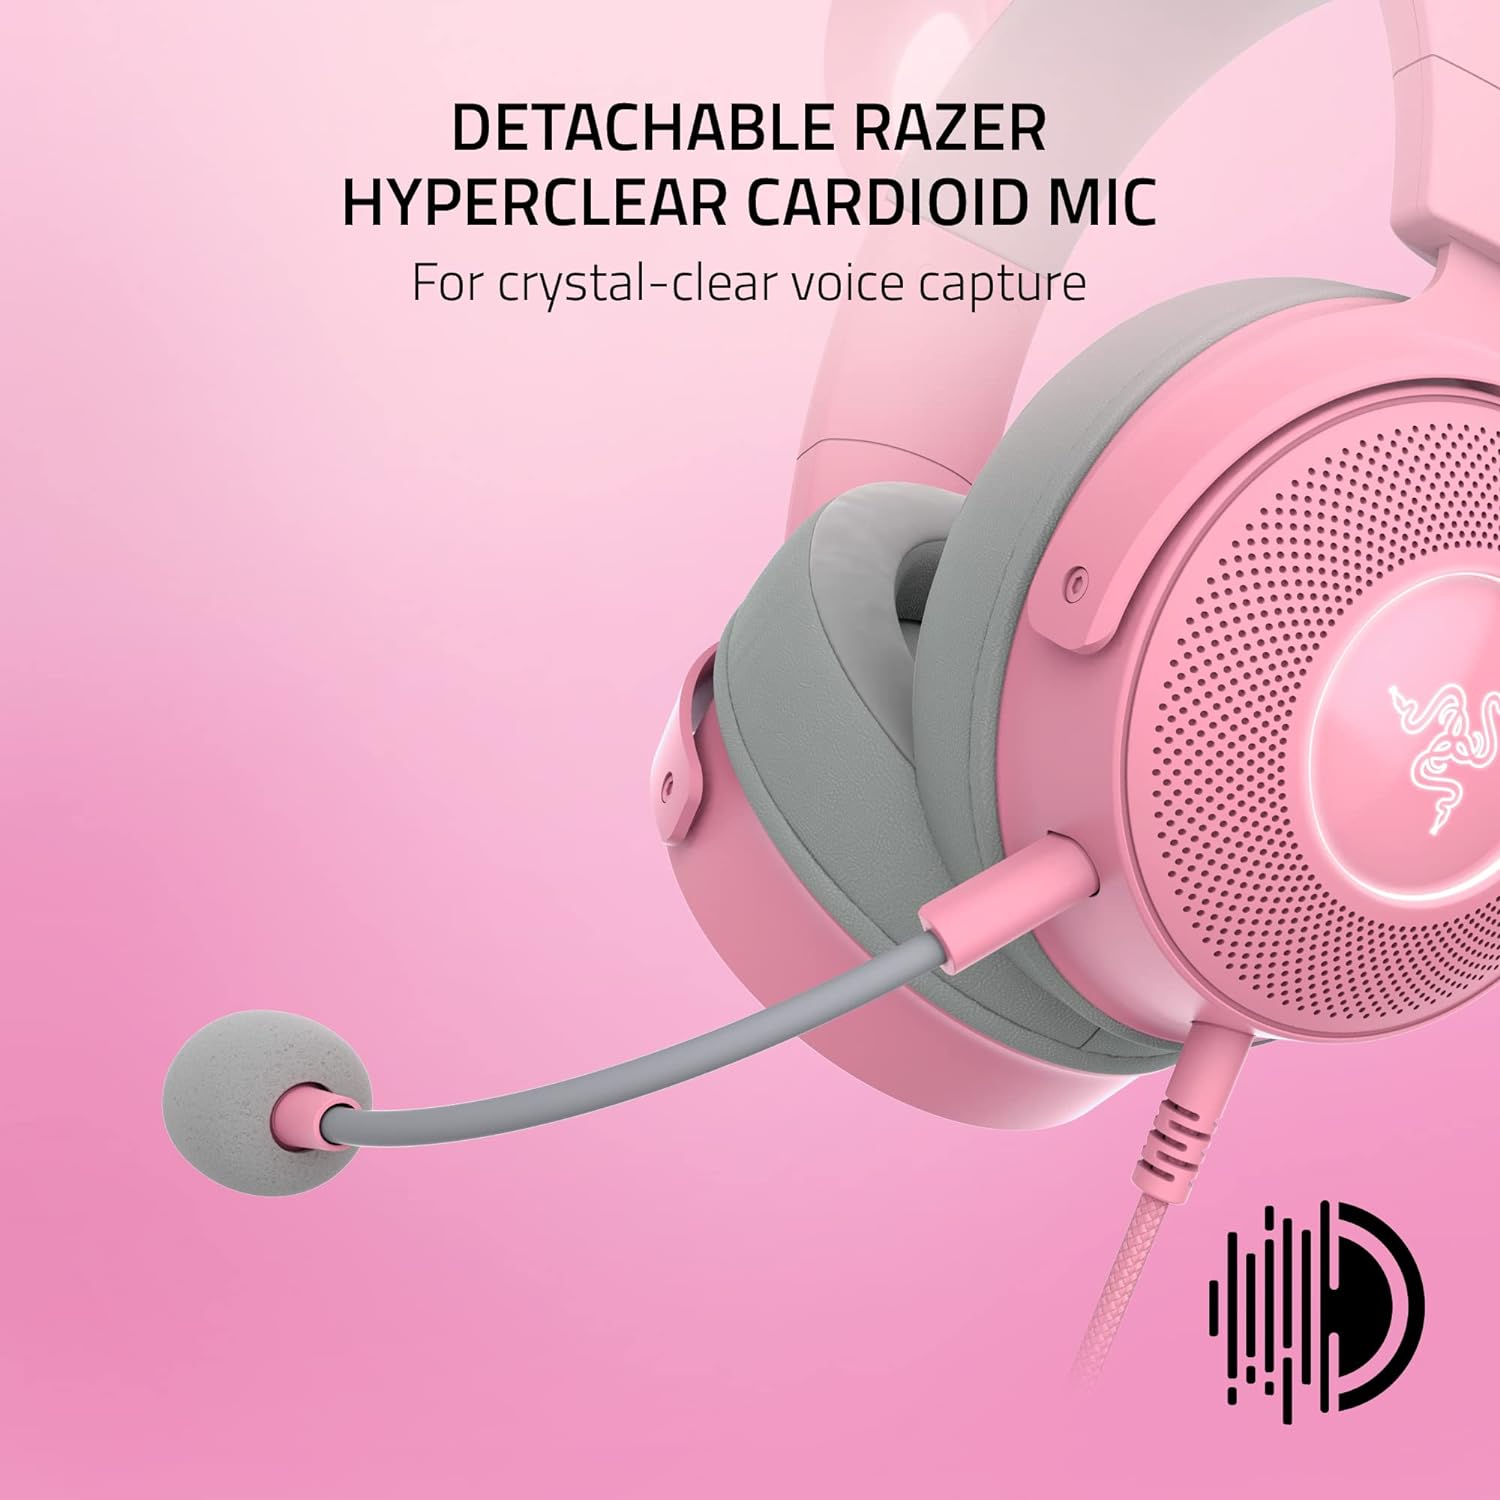 Tai nghe có dây chùm đầu Razer Kraken Kitty Edition V2 Pro-Wired RGB Headset with Interchangeable Ears (Hàng chính hãng)